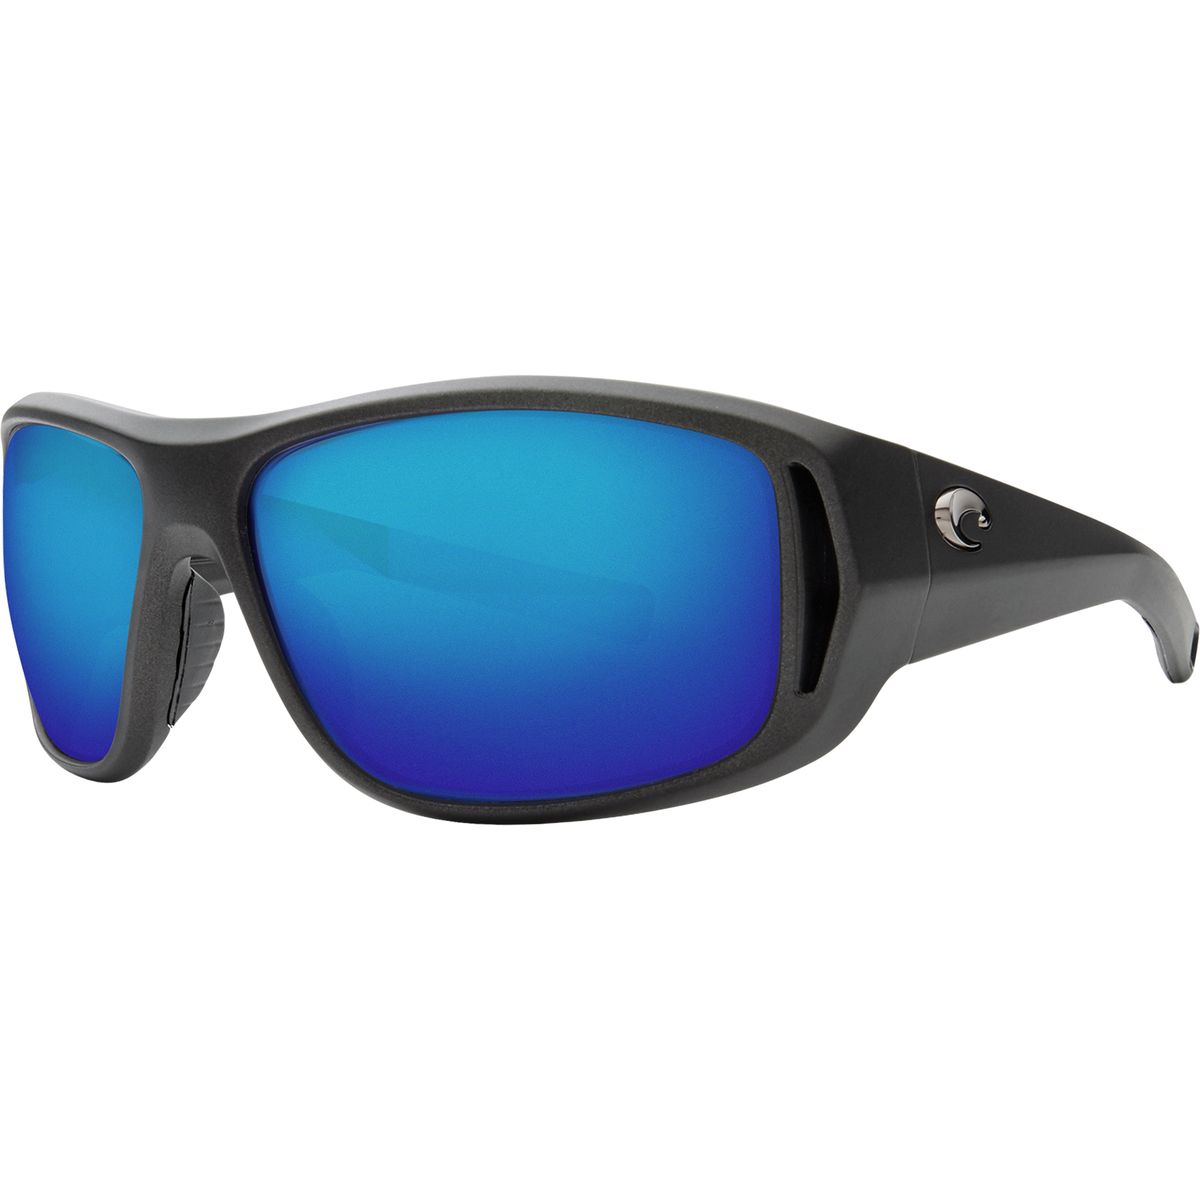 Поляризованные солнцезащитные очки Costa Montauk 580P Costa